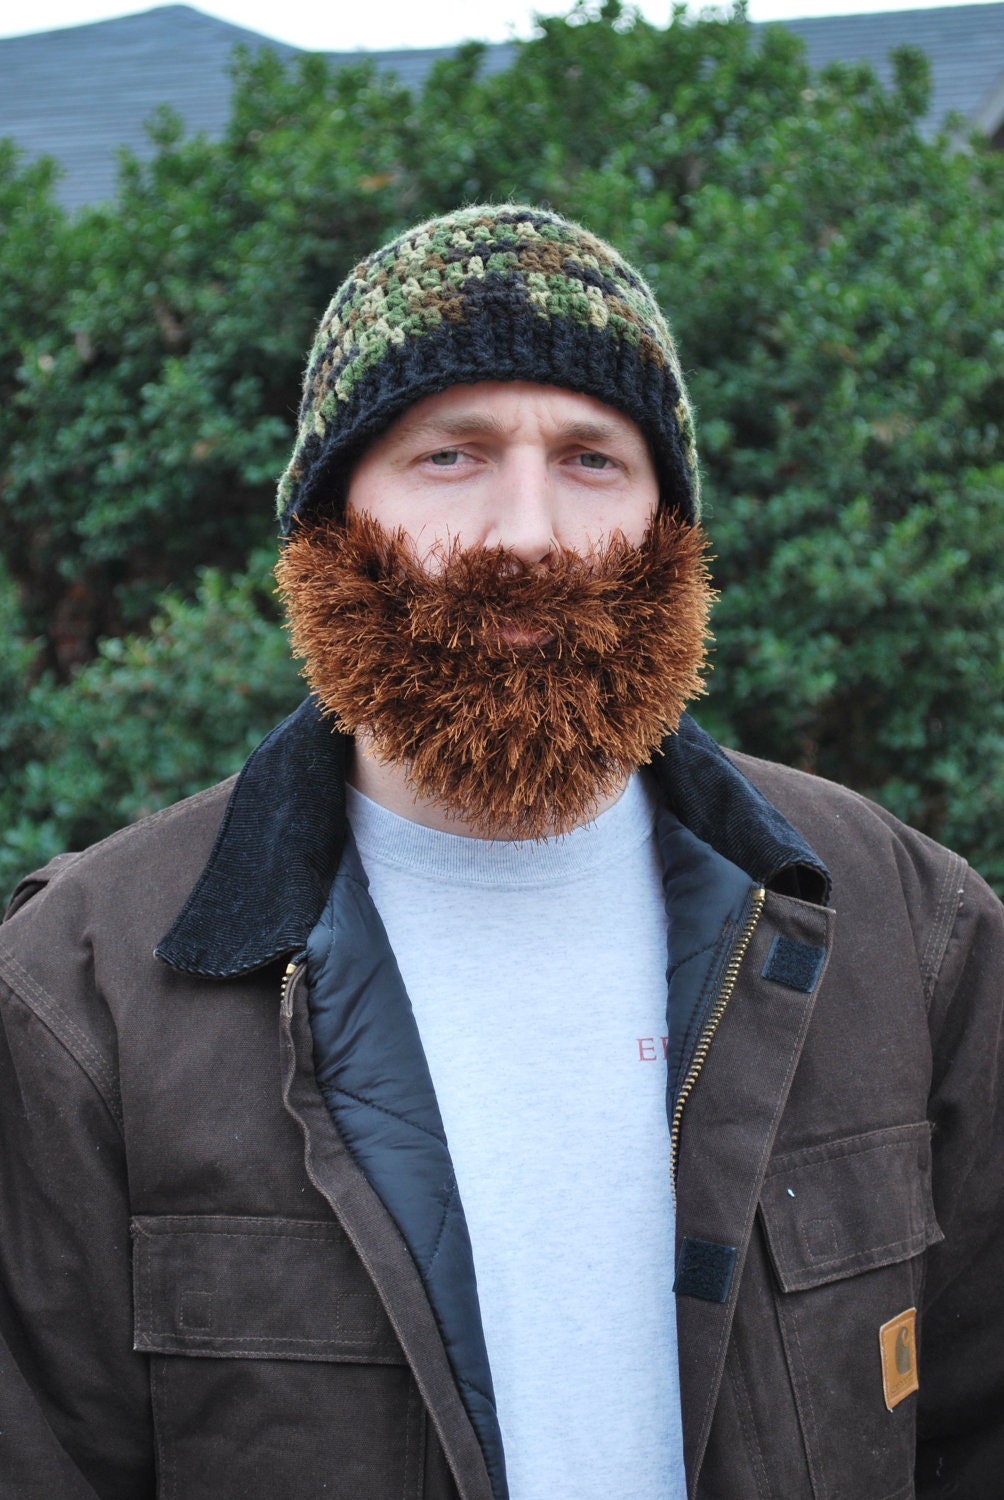 Crochet Beanie with Beard